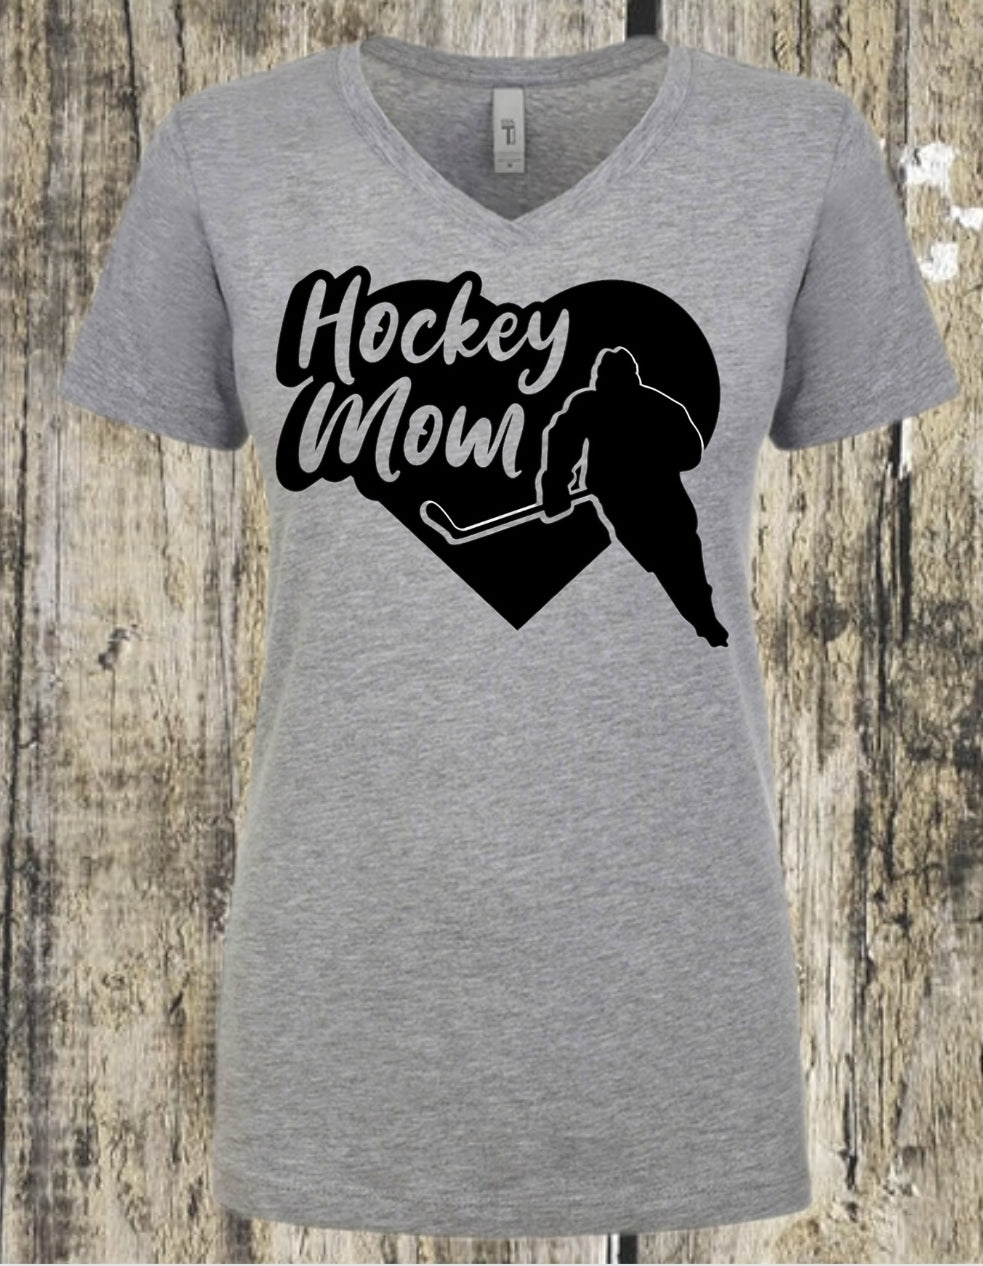 Hockey Mom (#6)